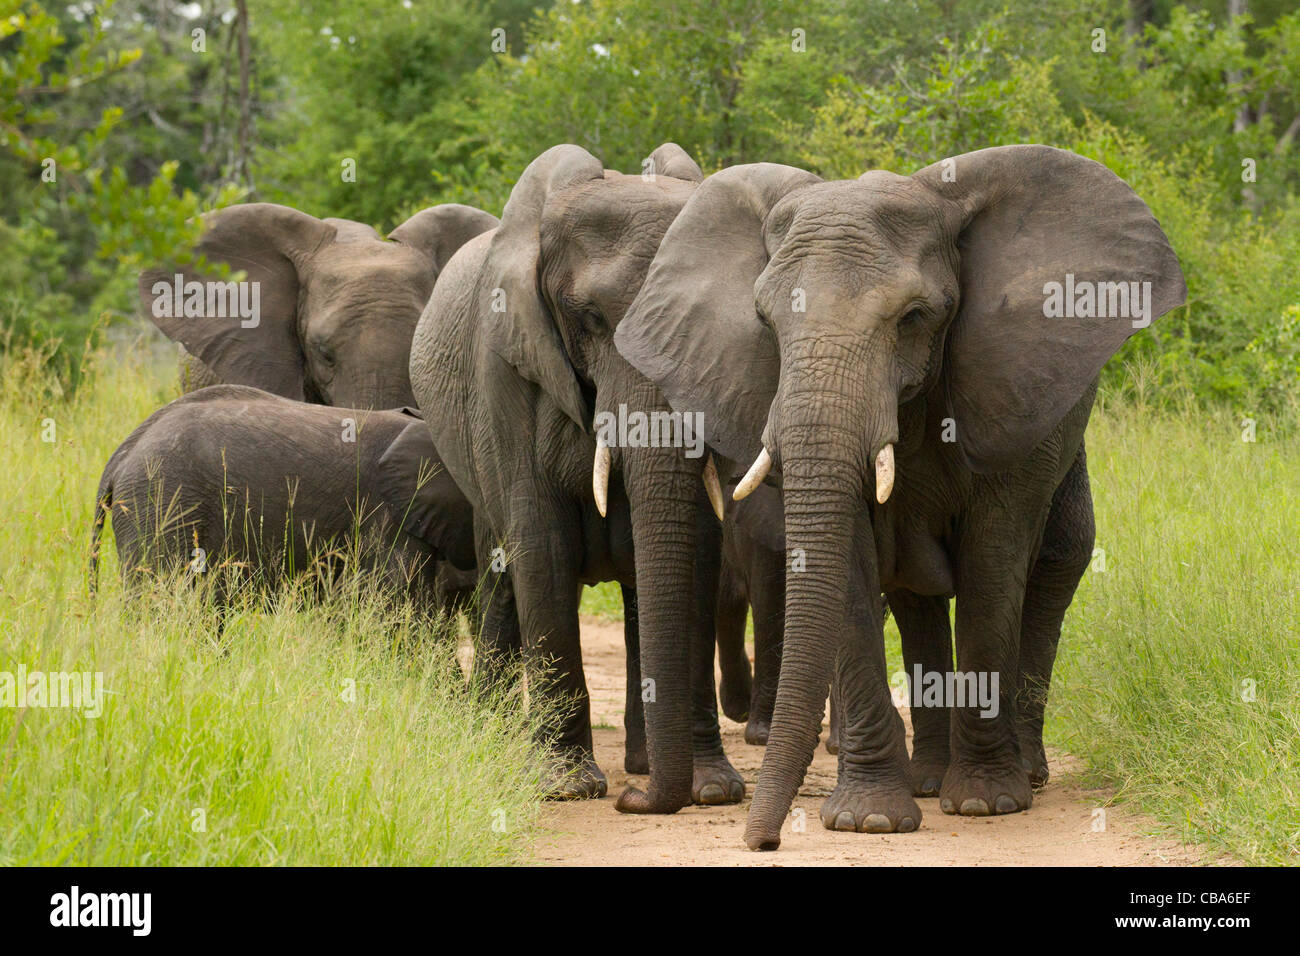 Paseos del elefante africano (Loxodonta africana) Foto de stock